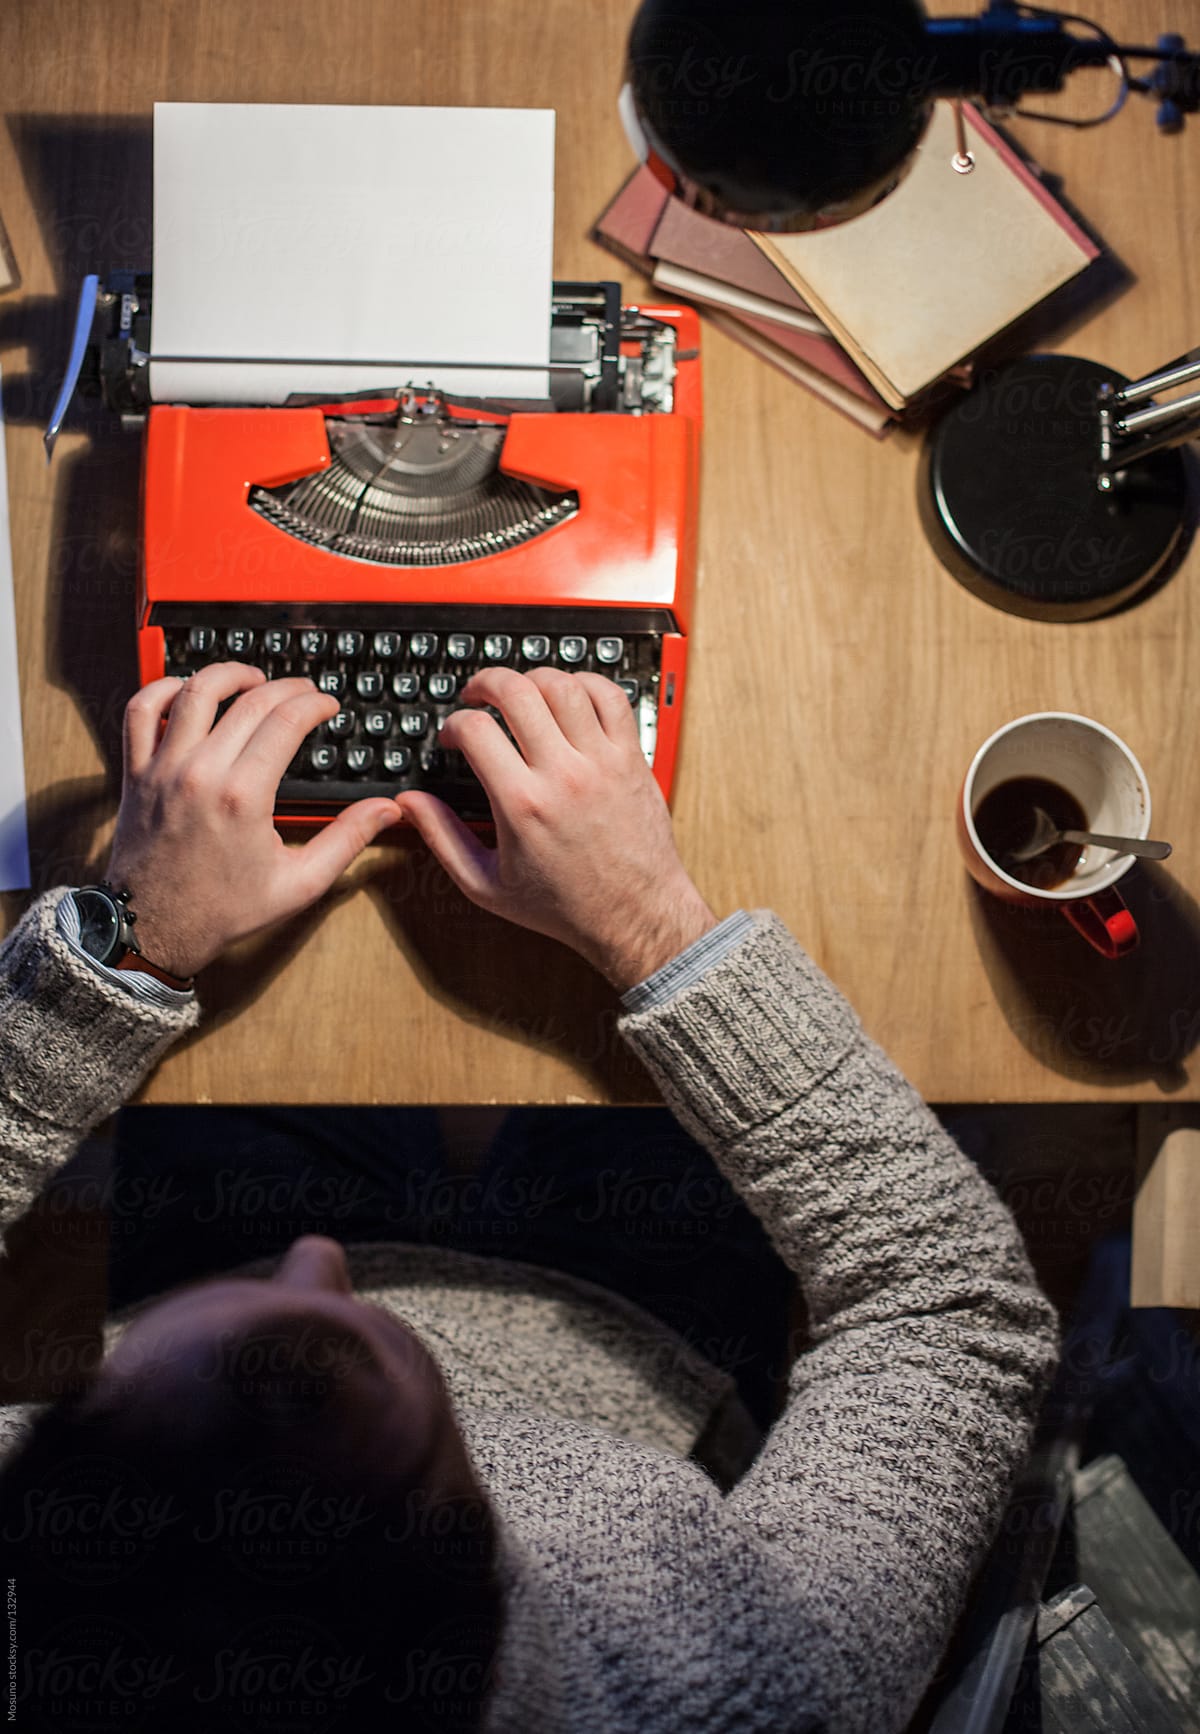 Man working on a typewriter at night.